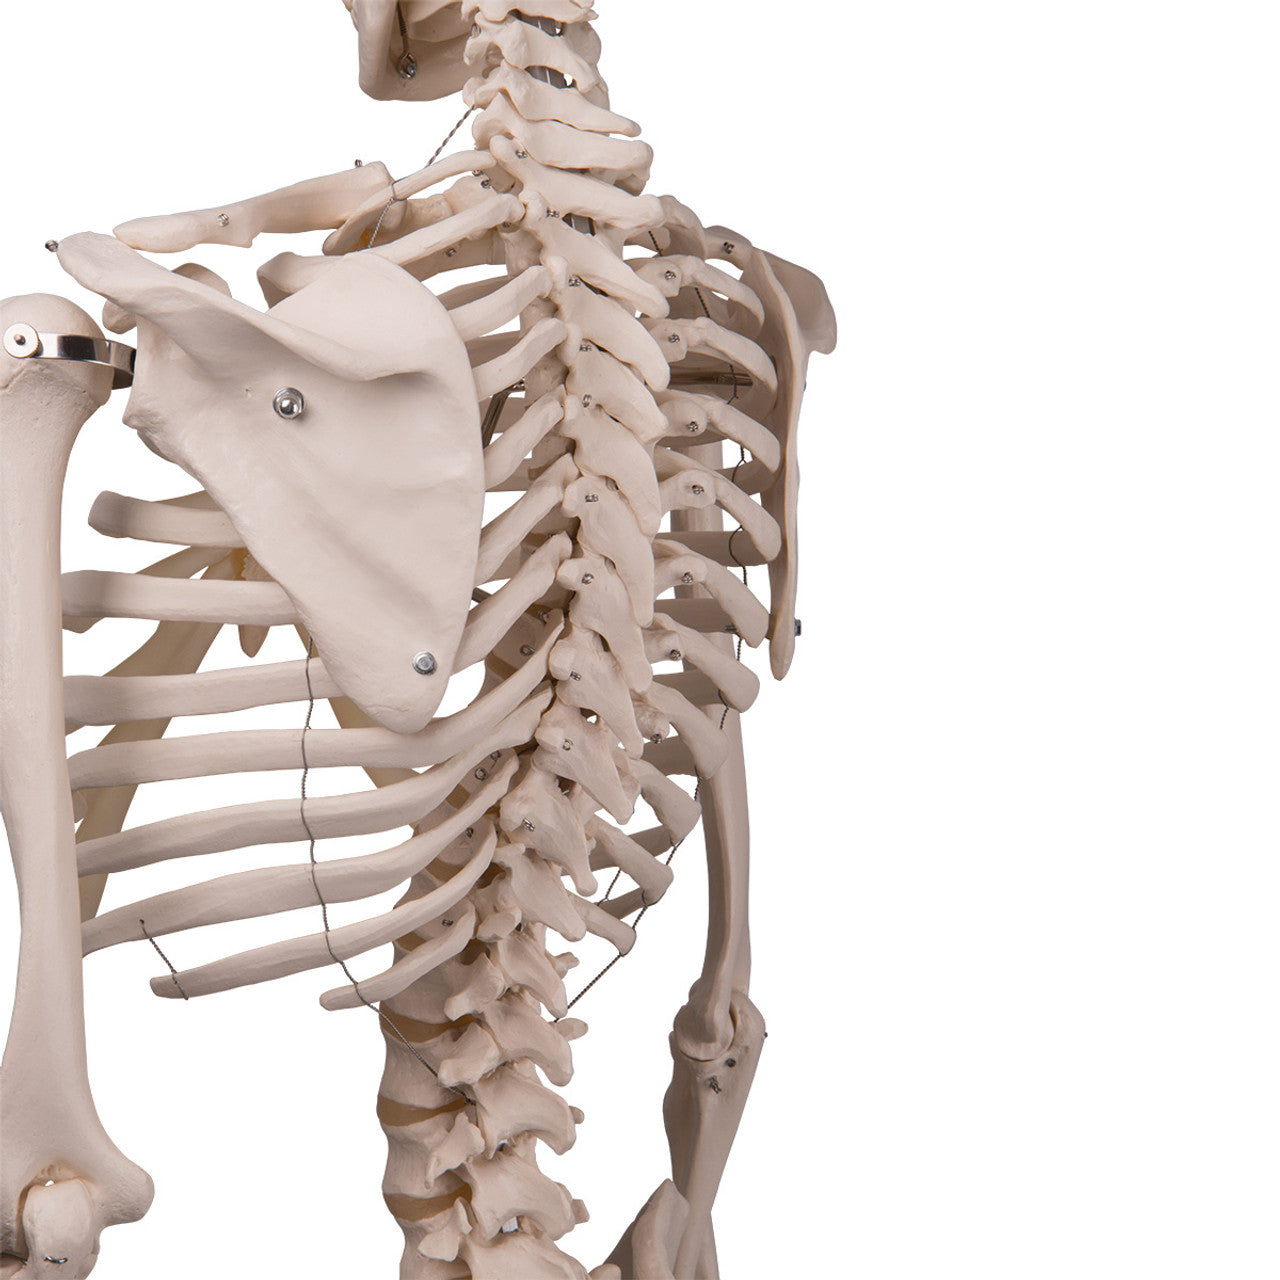 Standard Human Skeleton